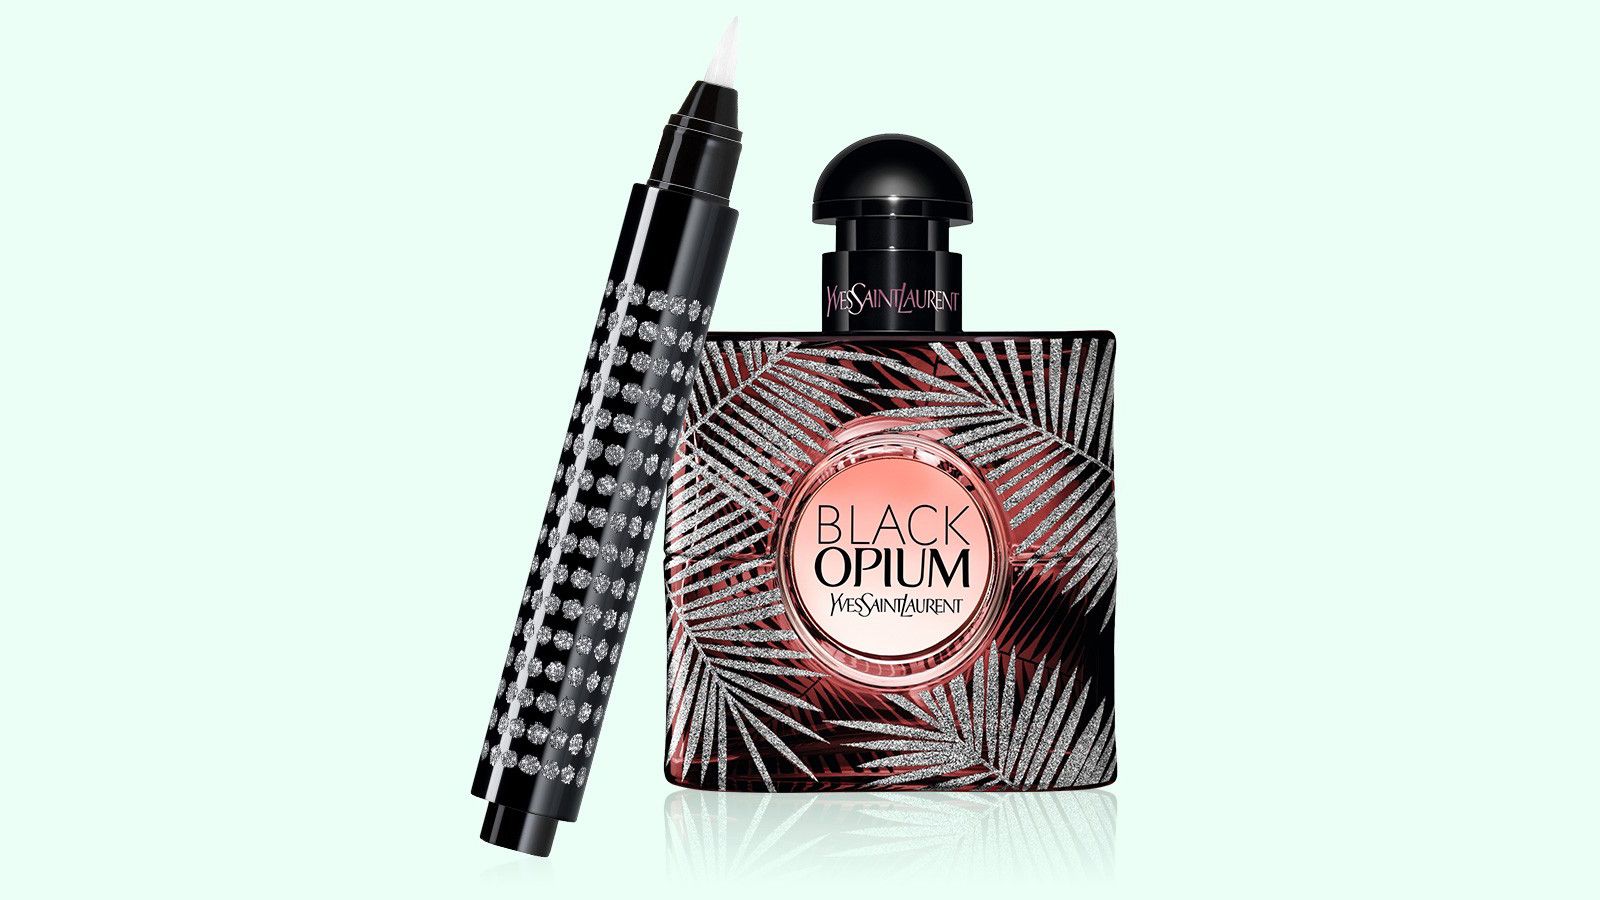 200 доз и лимитированный флакон: коллекционное издание и мини-формат культового аромата Black Opium от YSL